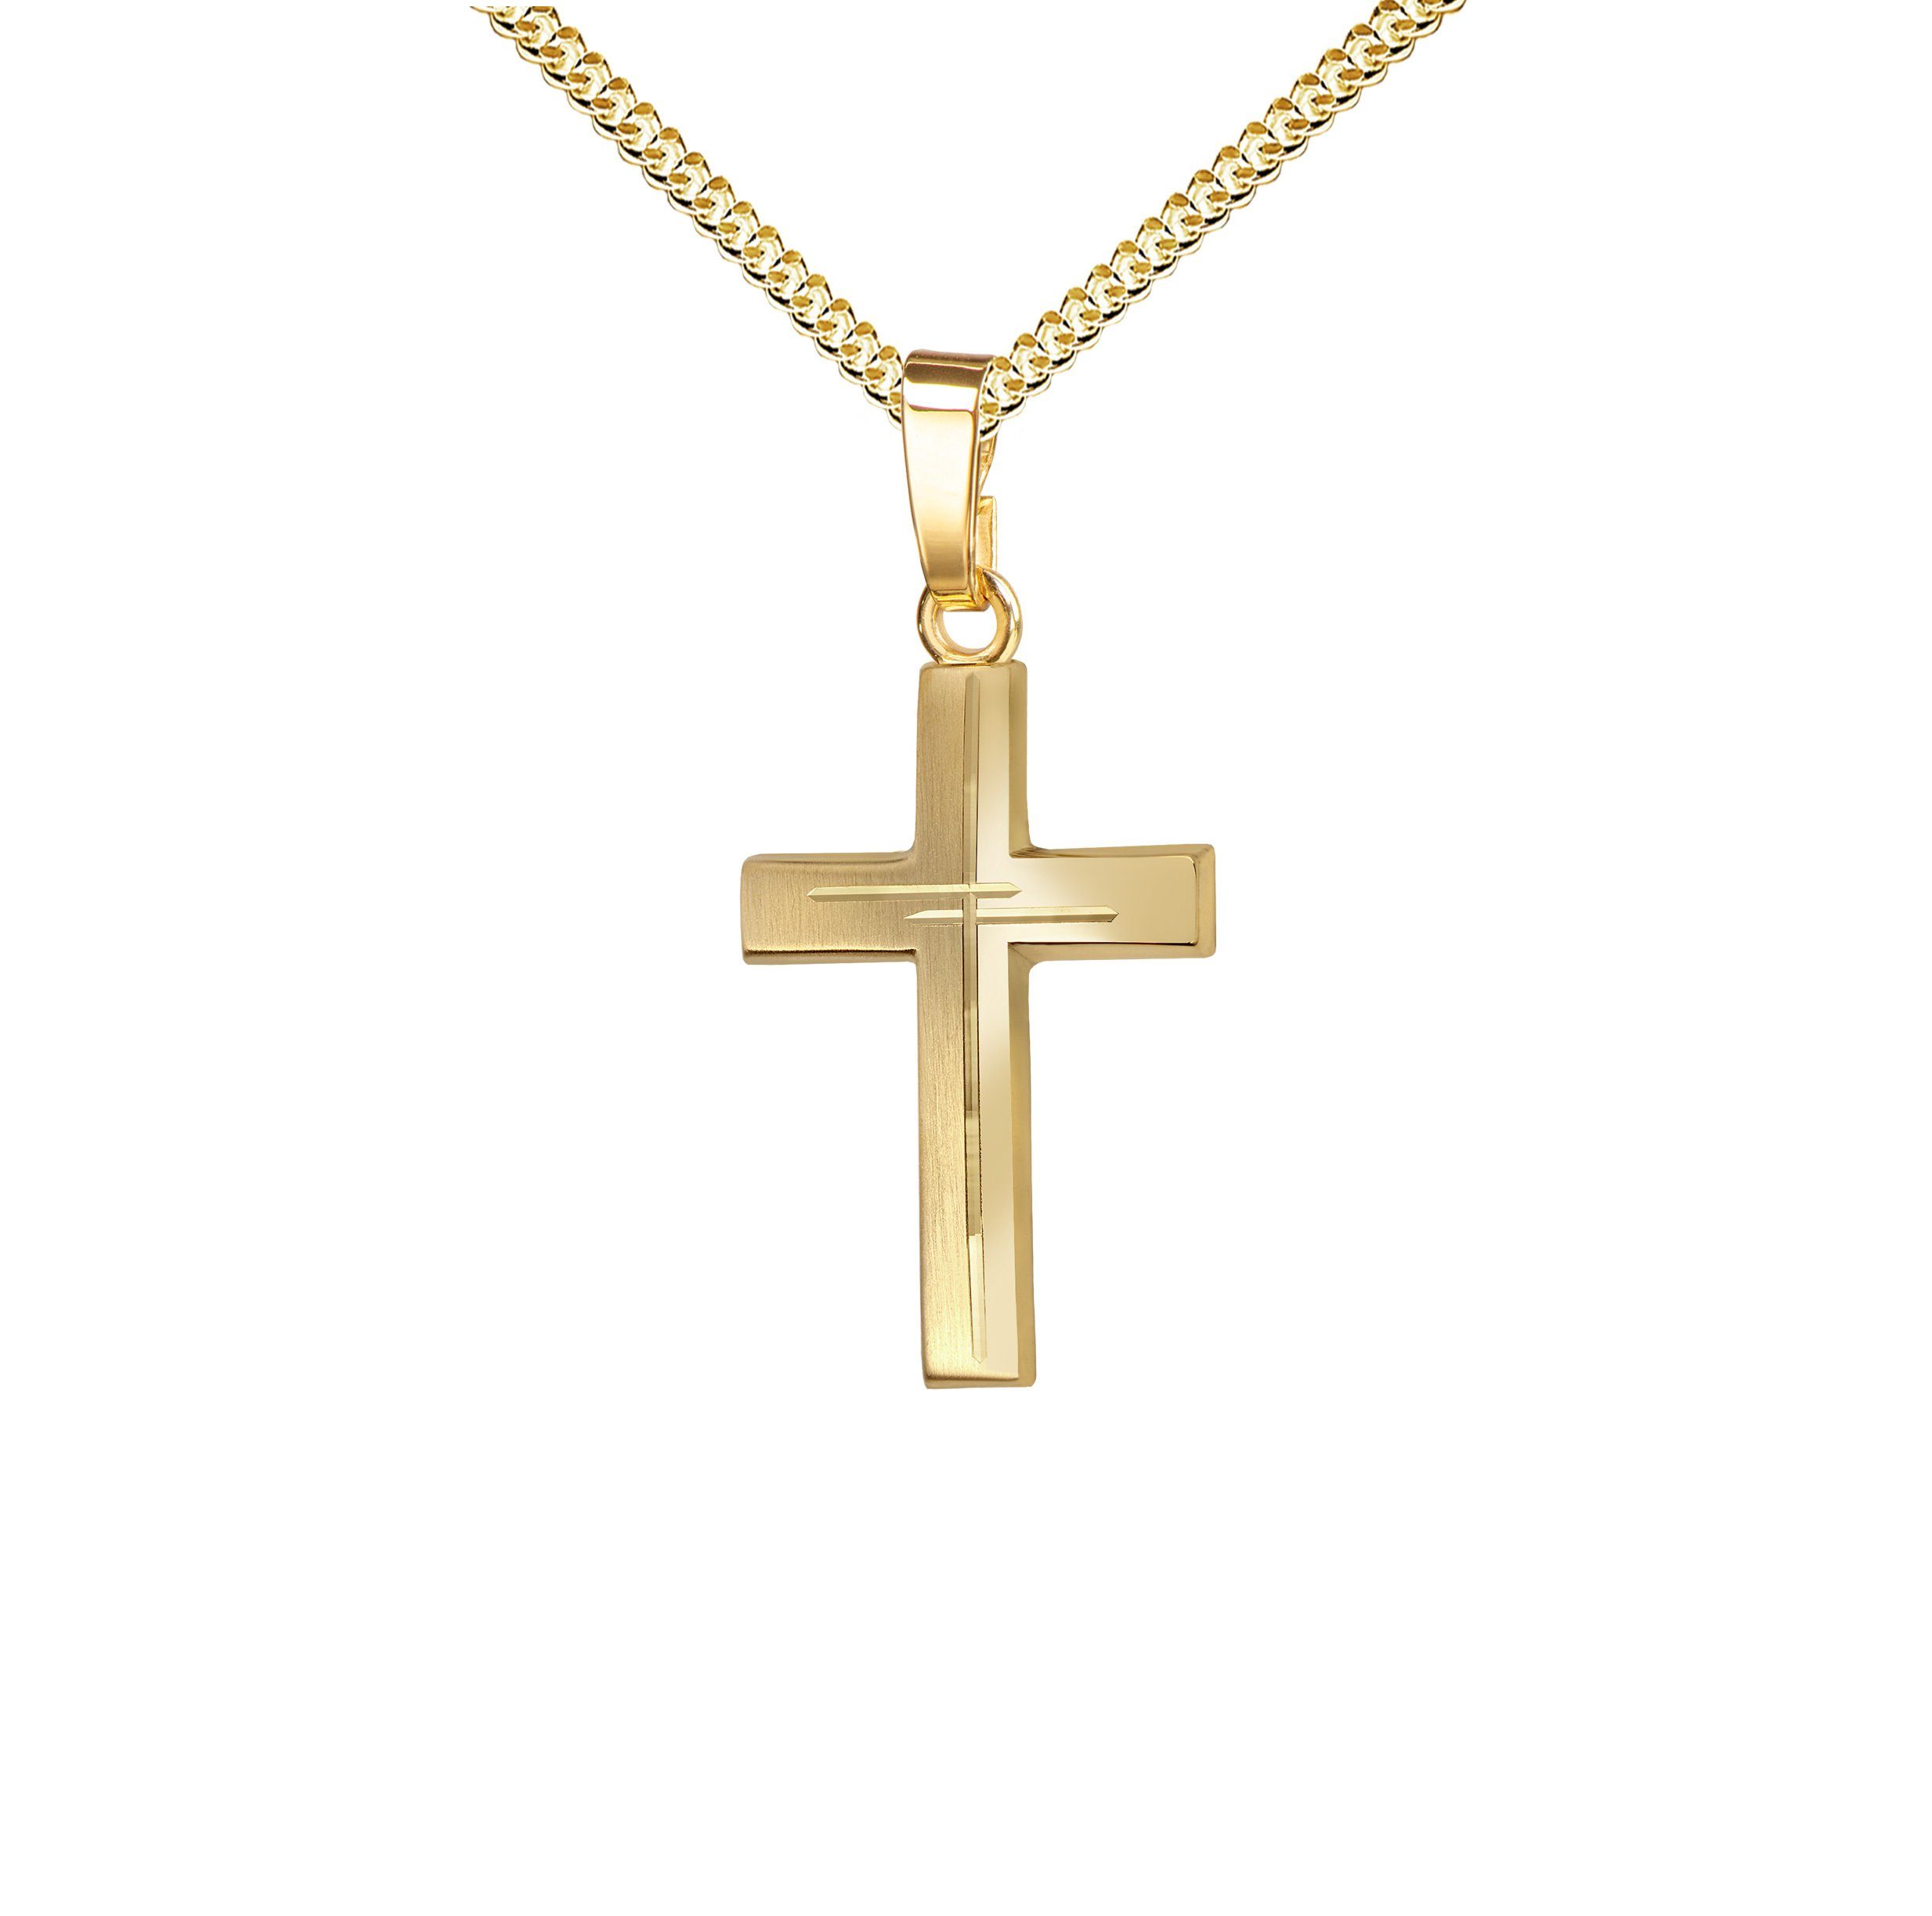 JEVELION Kreuzkette mit Diamantschliff Kreuzanhänger 585 Gold - Made in Germany (Goldkreuz, für Damen und Herren), Mit Kette vergoldet- Länge wählbar 36 - 70 cm oder ohne Kette.